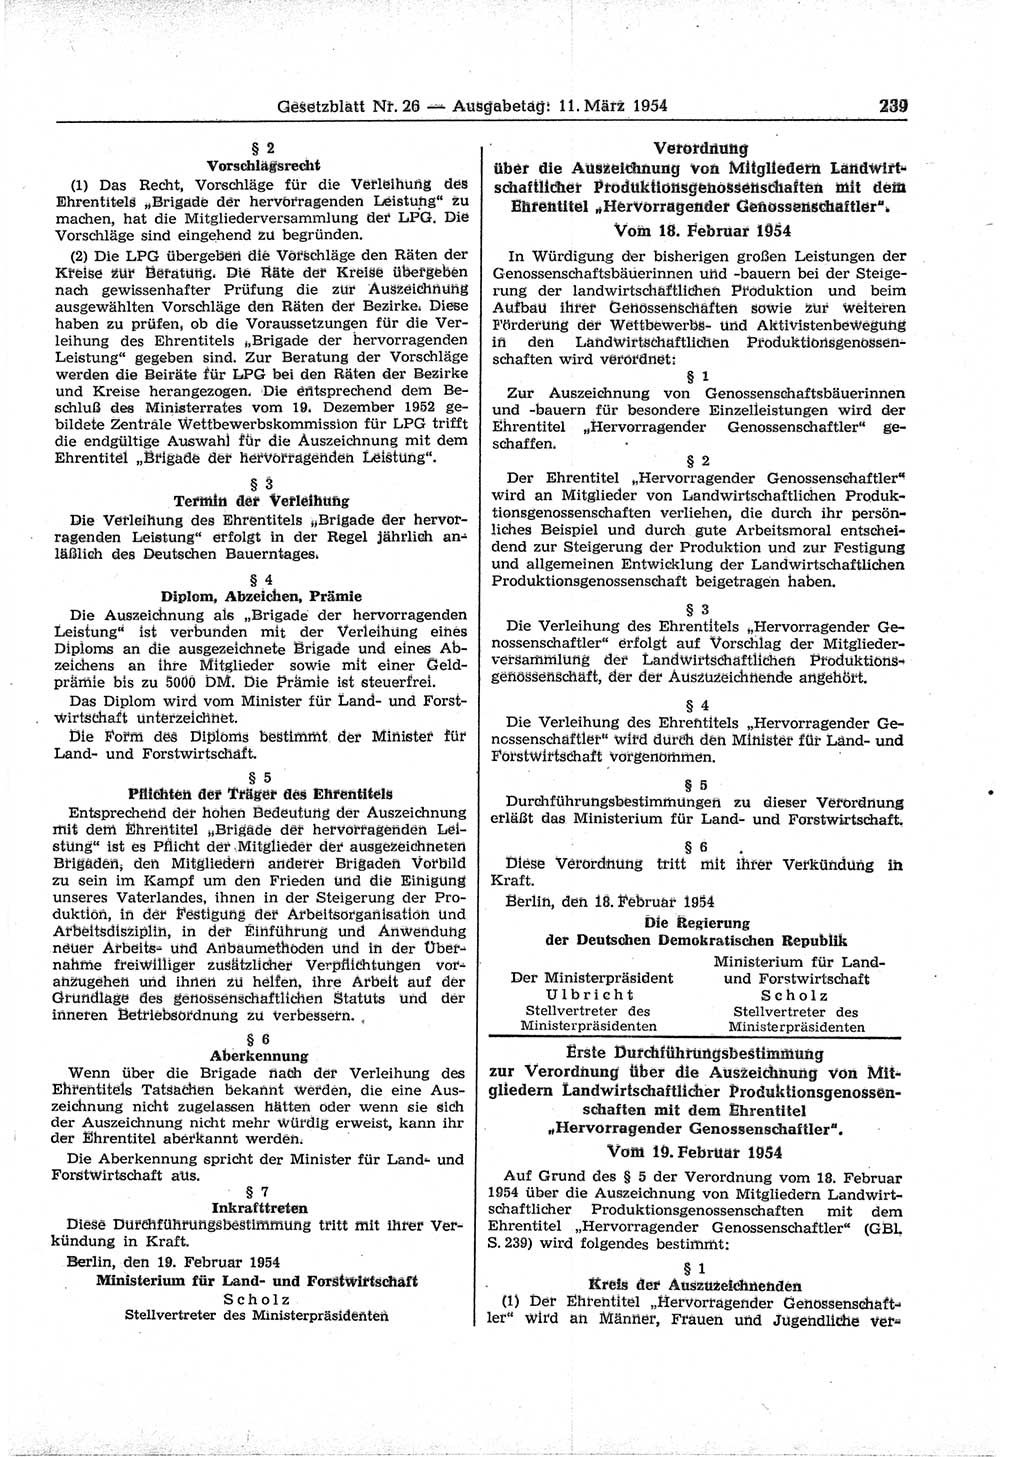 Gesetzblatt (GBl.) der Deutschen Demokratischen Republik (DDR) 1954, Seite 239 (GBl. DDR 1954, S. 239)